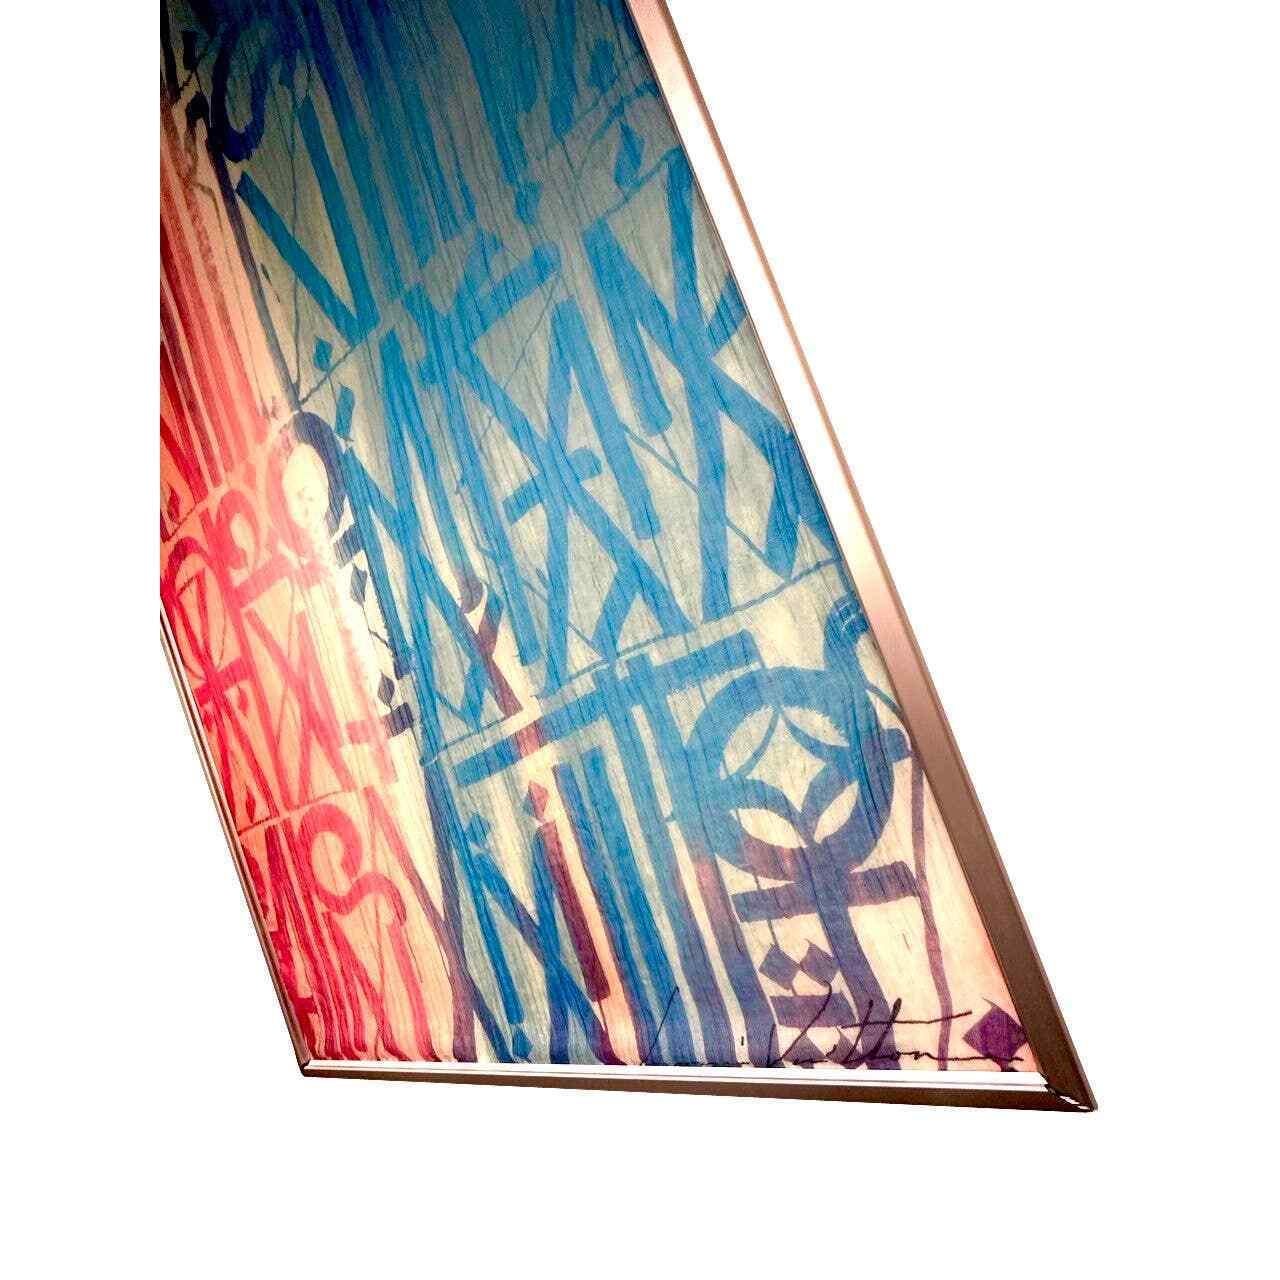 RETNA Signature X Louis Vuitton LV Graffiti Collection Piece by LA Street Art For Sale 1